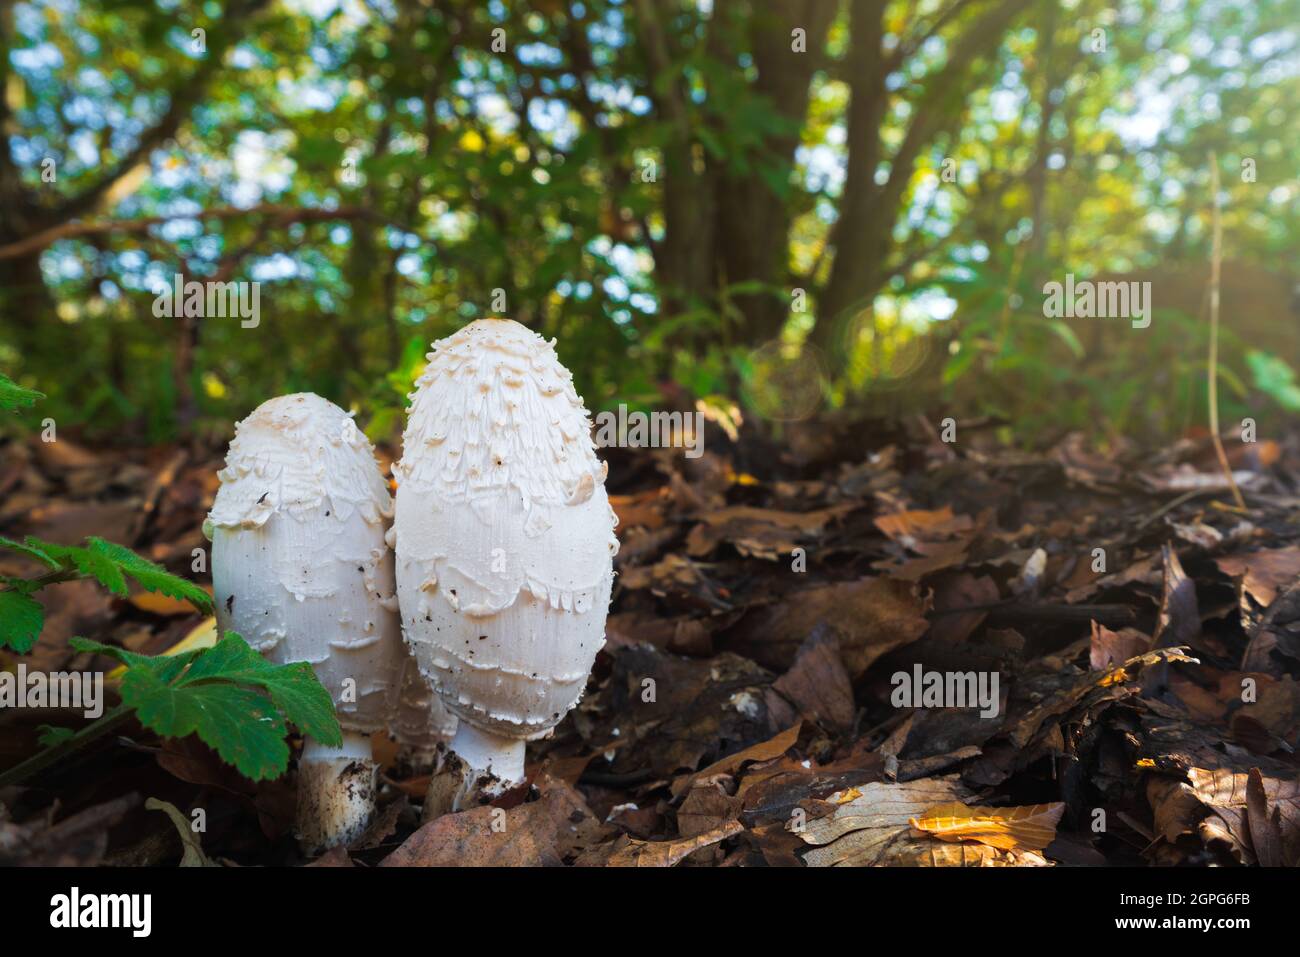 Coprinus comatus mushroom in autumn forest Stock Photo